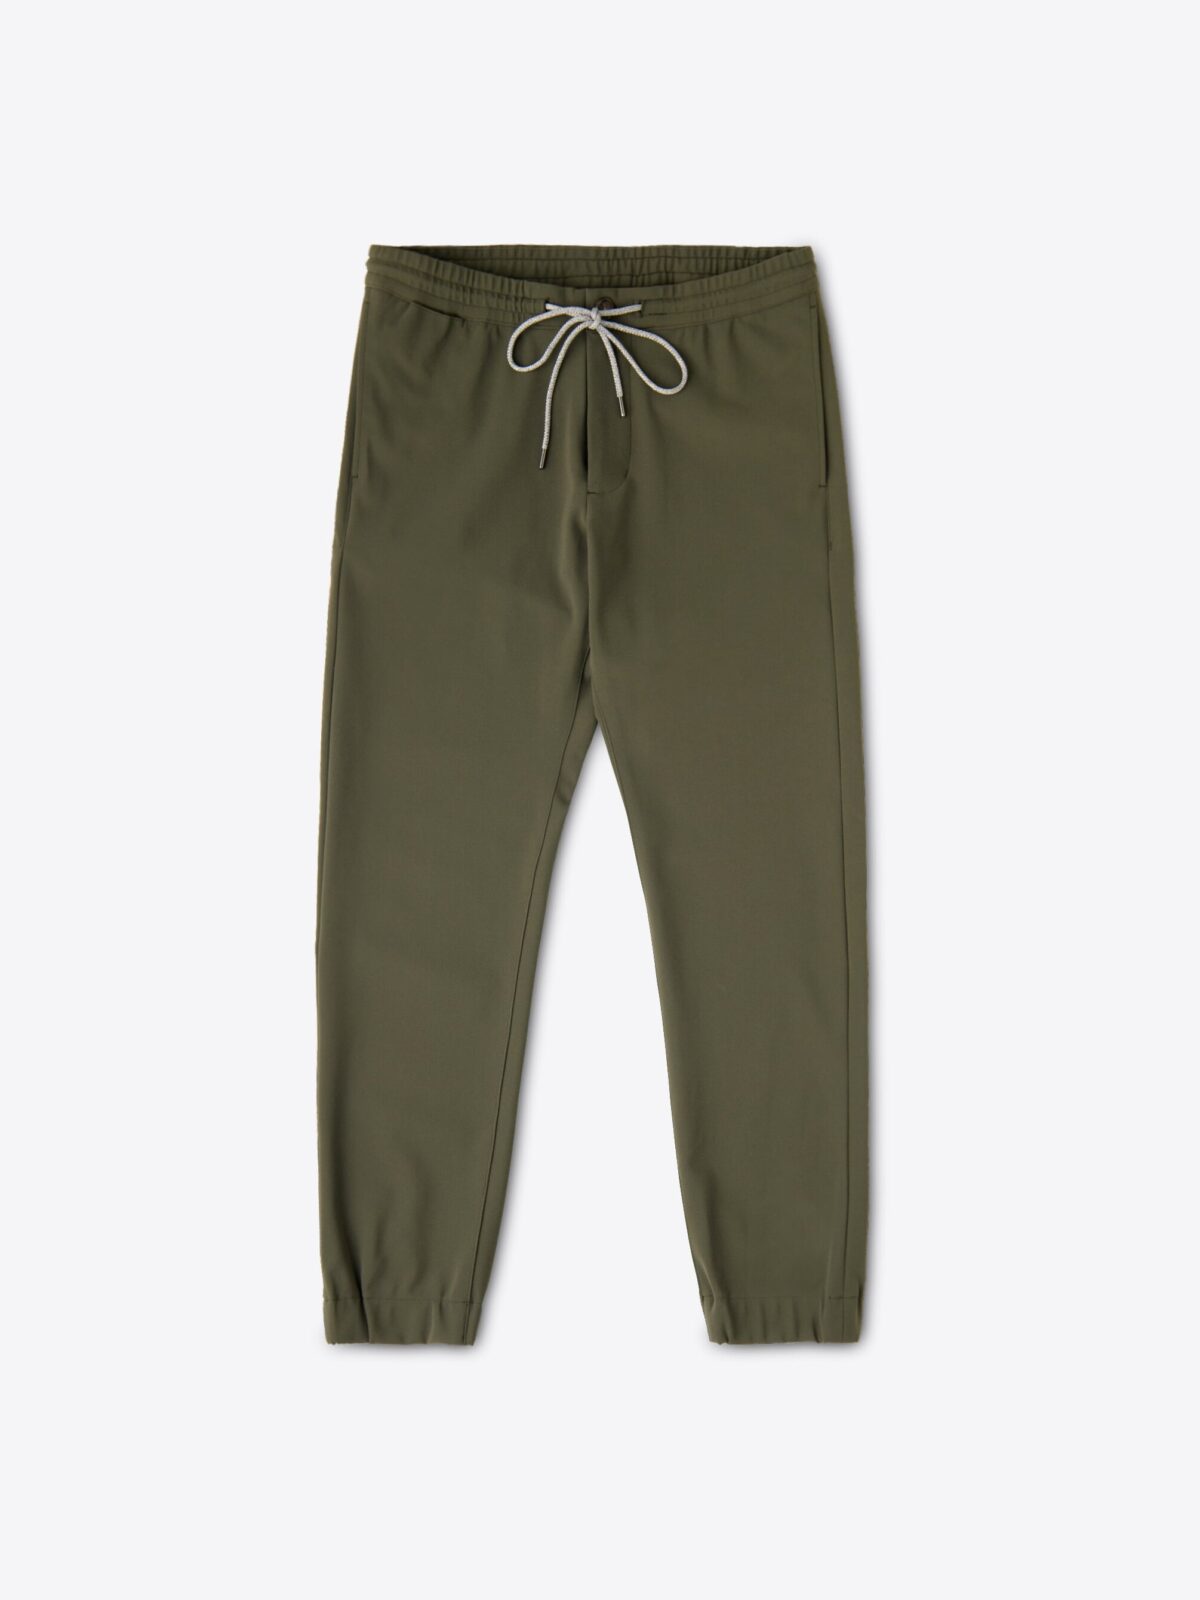 Green Jogger Trousers | Men's Fashion Joggers | HolloMen | Slim fit khakis,  Khaki jogger pants, Slim fit pants men